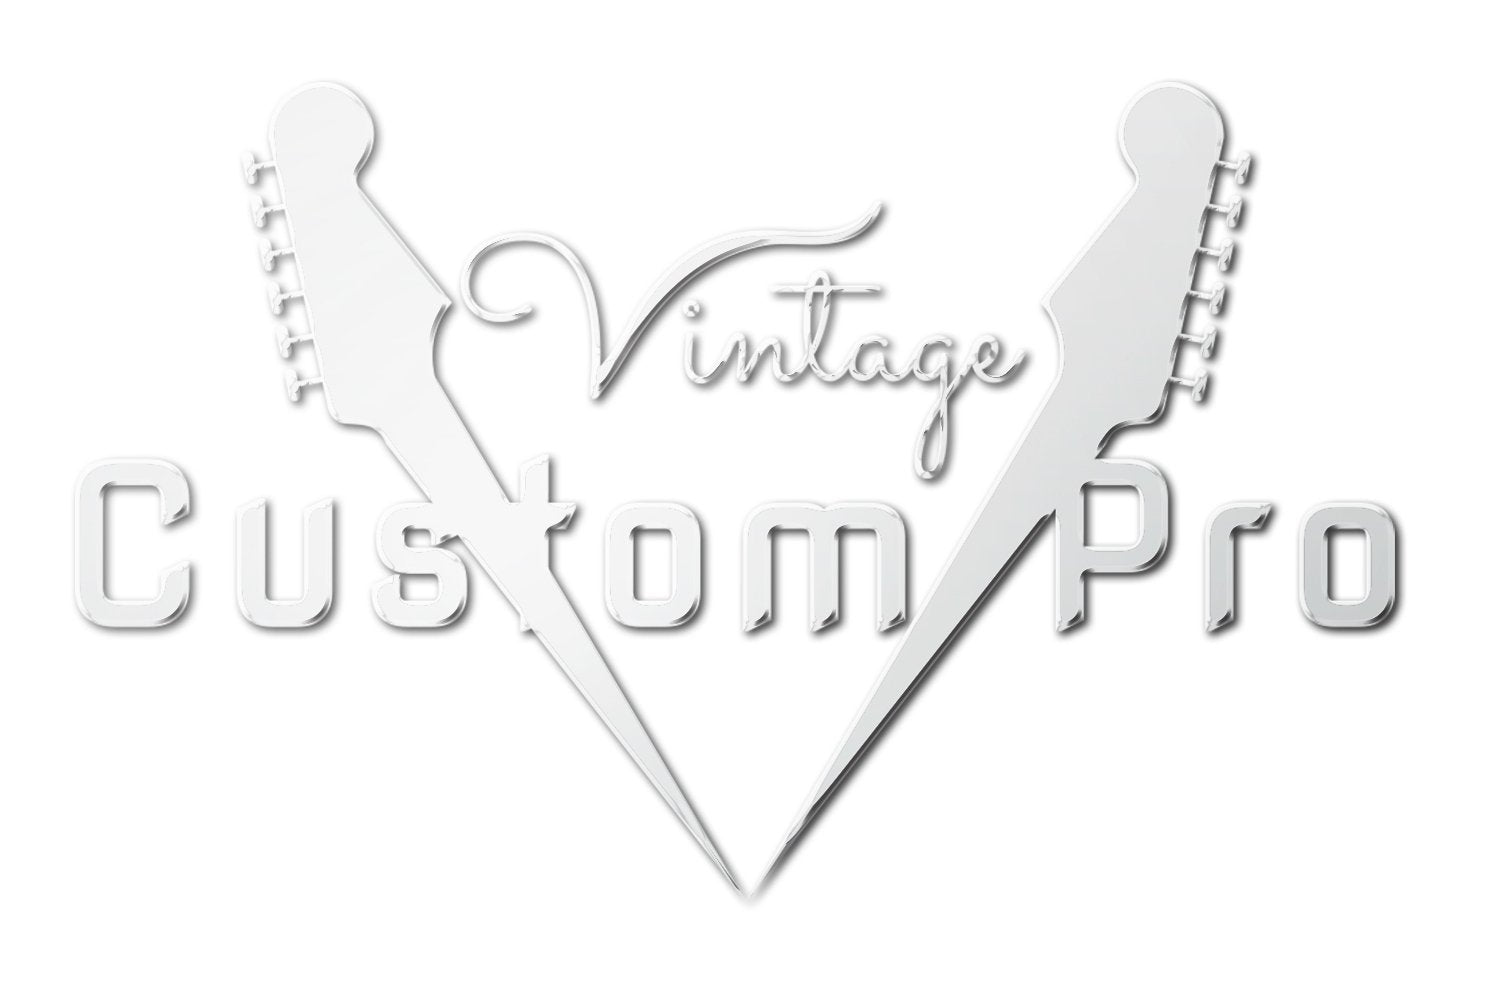 Vintage* V6MRSSB Electric Guitar, Electric Guitar for sale at Richards Guitars.